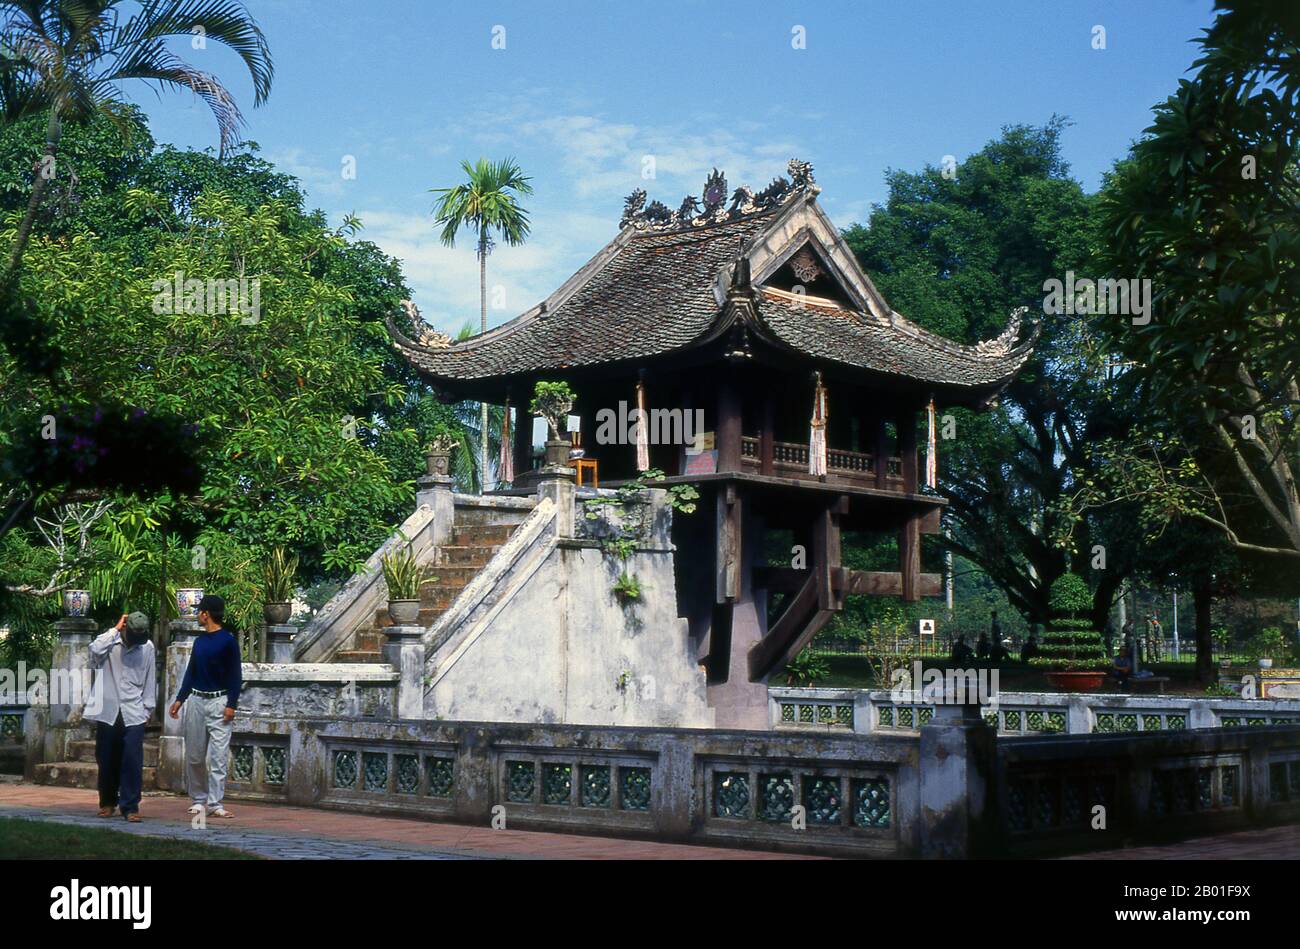 ‘Una Pagoda pilastro’ o Chua Mot Cot è un'icona importante per la città di Hanoi. Situato all'interno della piccola Pagoda Dien Huu, che risale anche al 11th secolo, Chua Mot Cot è una pagoda in legno costruita, come suggerisce il nome, su un unico pilastro in pietra in piedi in un semplice ma elegante laghetto di loto. Re Ly Tong tailandese (1000 - 1054) originariamente costruito sia Dien Huu Pagoda e Chua Mot Cot nel 1049. Secondo la leggenda, il re, non avendo figli, fu visitato nei suoi sogni dalla Dea di Misericordia Quan Am, che era seduto su un fiore di loto e lo presentò con un bambino ragazzo. Poco dopo, Ly Thai Tong marrie Foto Stock